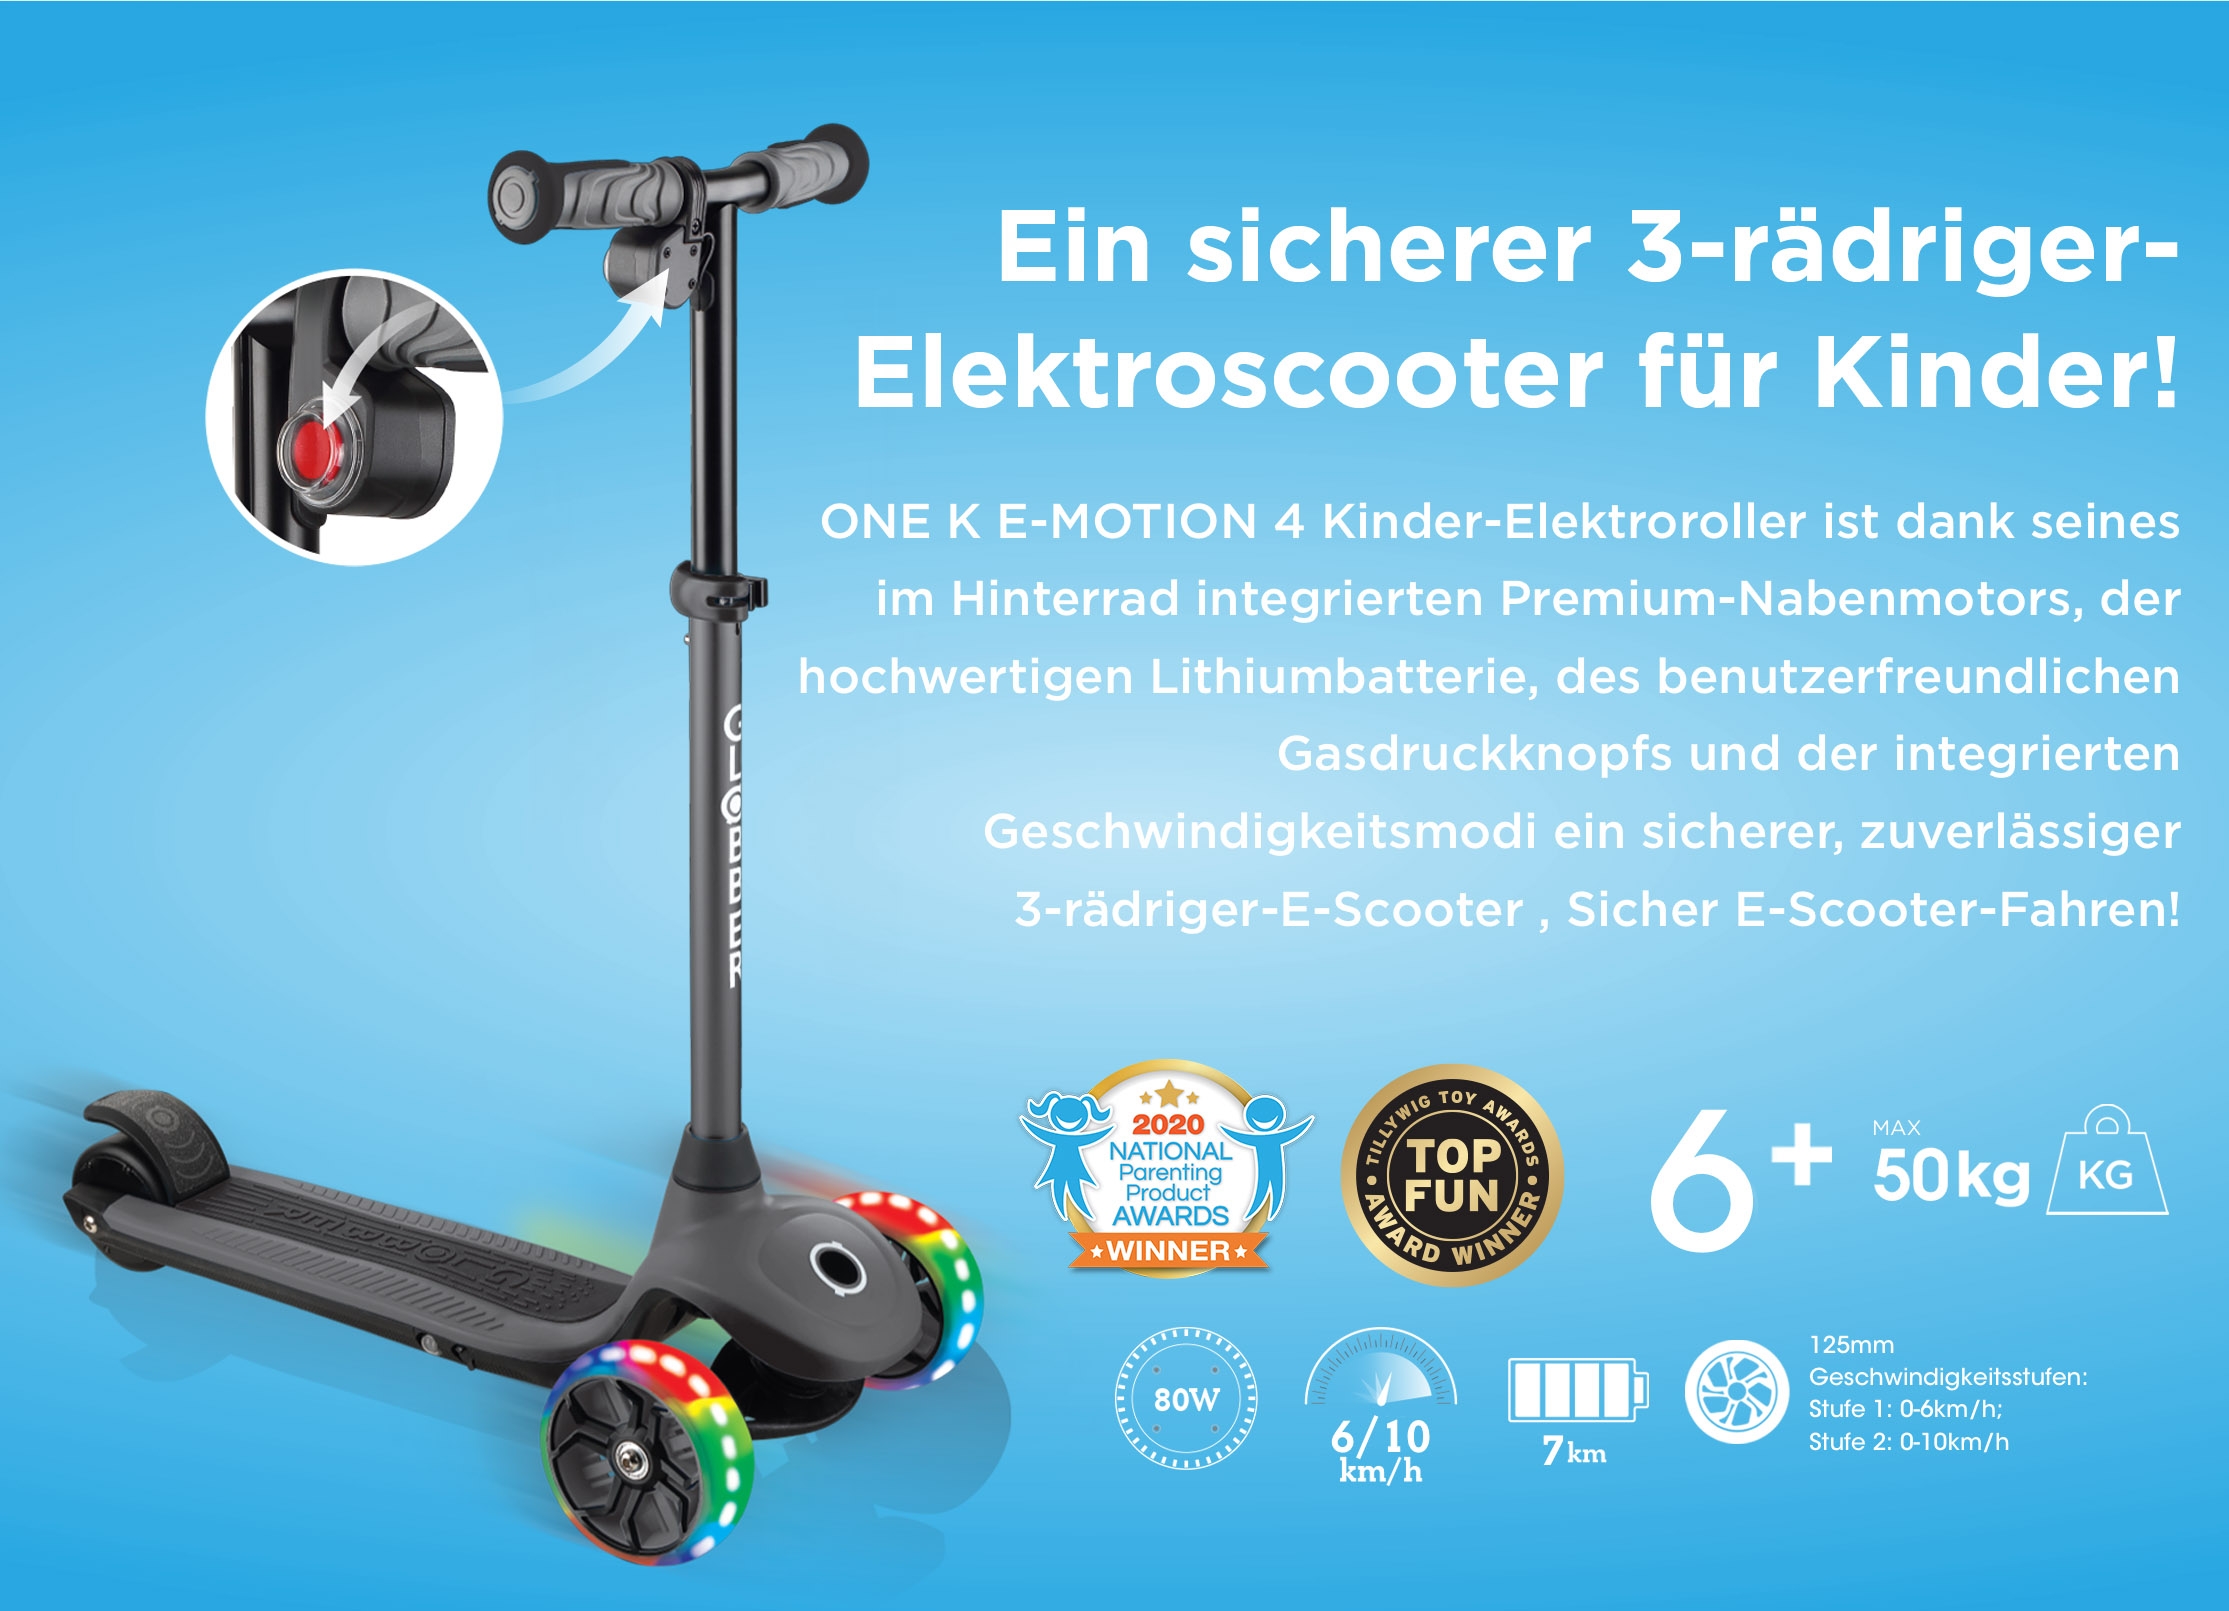 Ein sicherer 3-rädriger-Elektroscooter für Kinder! ONE K E-MOTION 4 Kinder-Elektroroller ist dank seines im Hinterrad integrierten Premium-Nabenmotors, der hochwertigen Lithiumbatterie, des benutzerfreundlichen Gasdruckknopfs und der integrierten Geschwindigkeitsmodi ein sicherer, zuverlässiger  3-rädriger-E-Scooter , Sicher E-Scooter-Fahren!